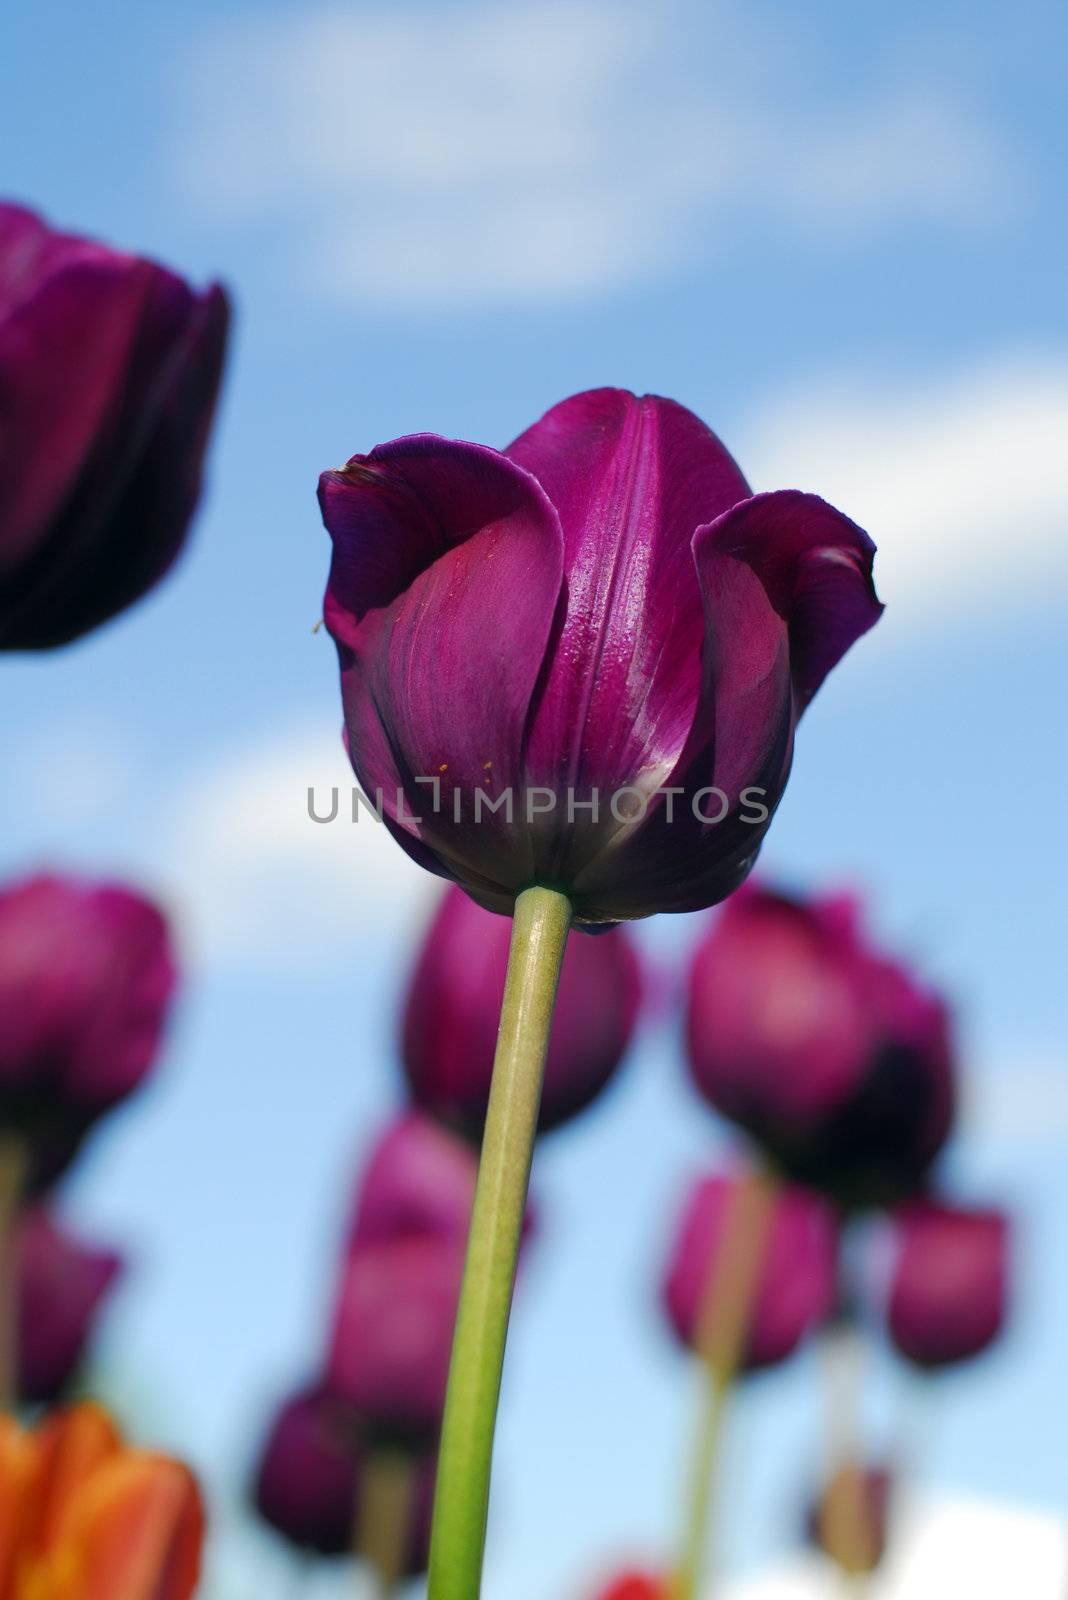 purple tulip flower by nikonite